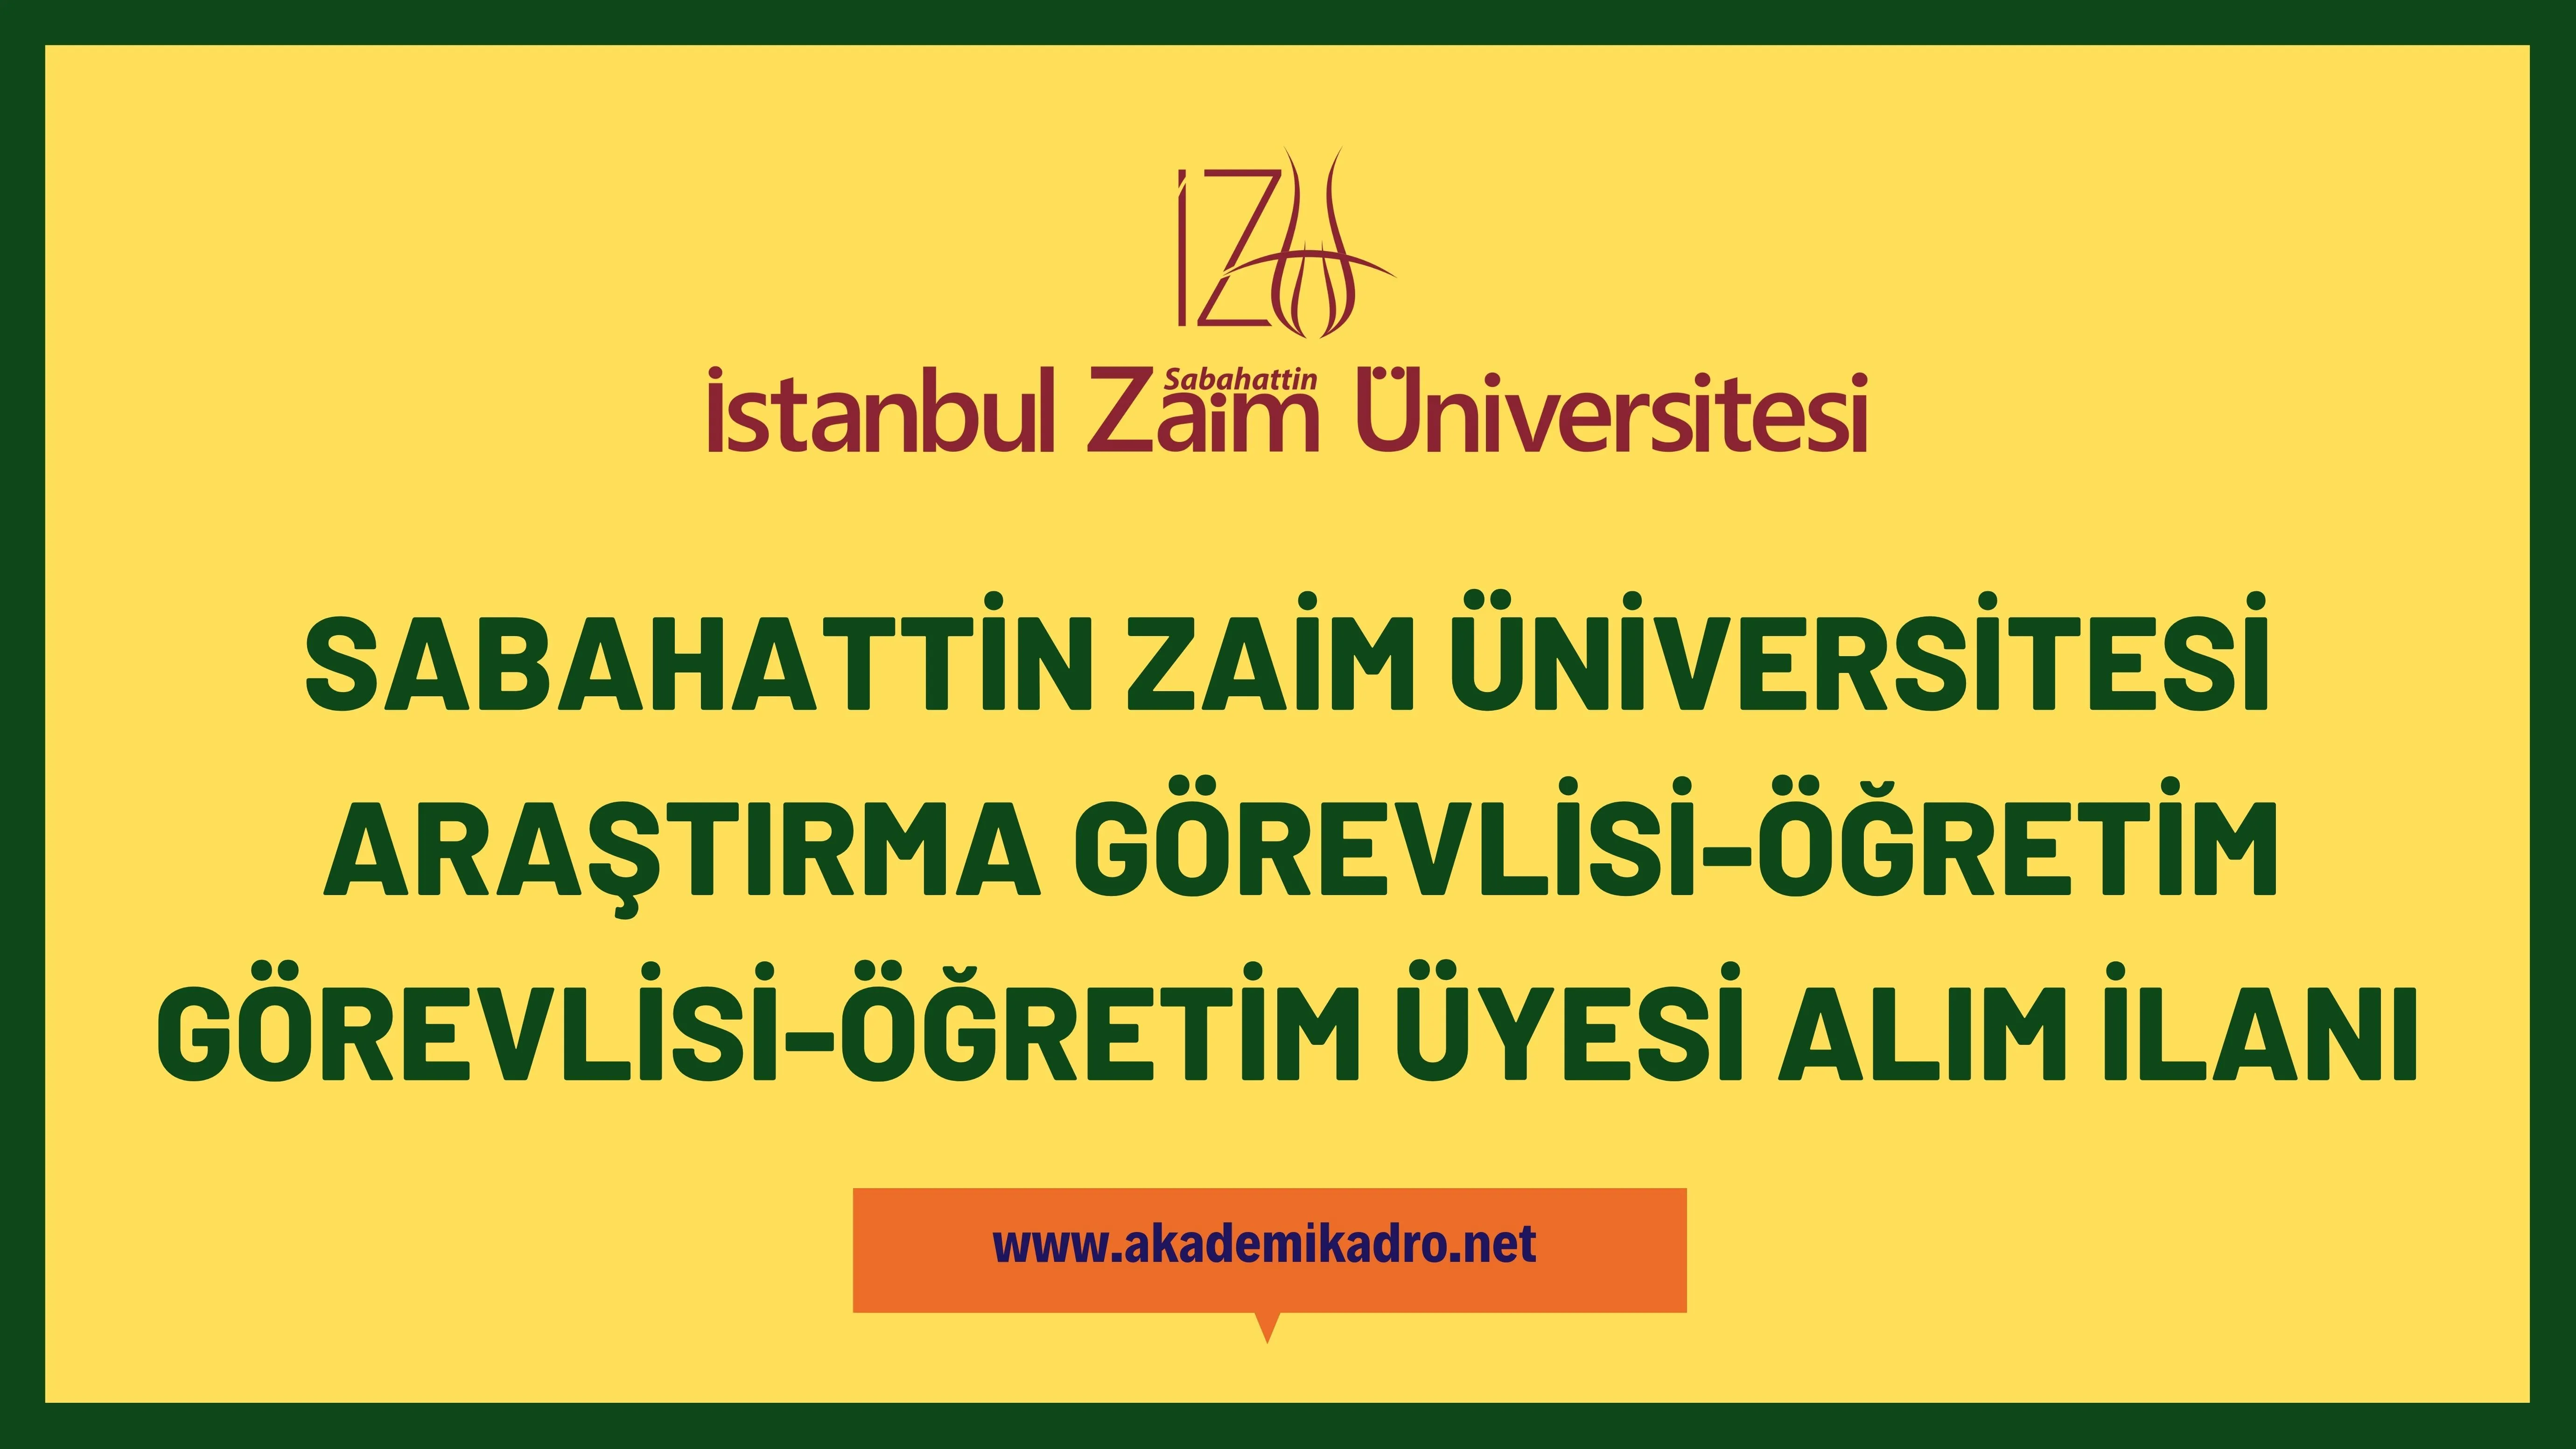 İstanbul Sabahattin Zaim Üniversitesi 28 öğretim üyesi, 10 araştırma görevlisi ve 2 öğretim görevlisi alacaktır.